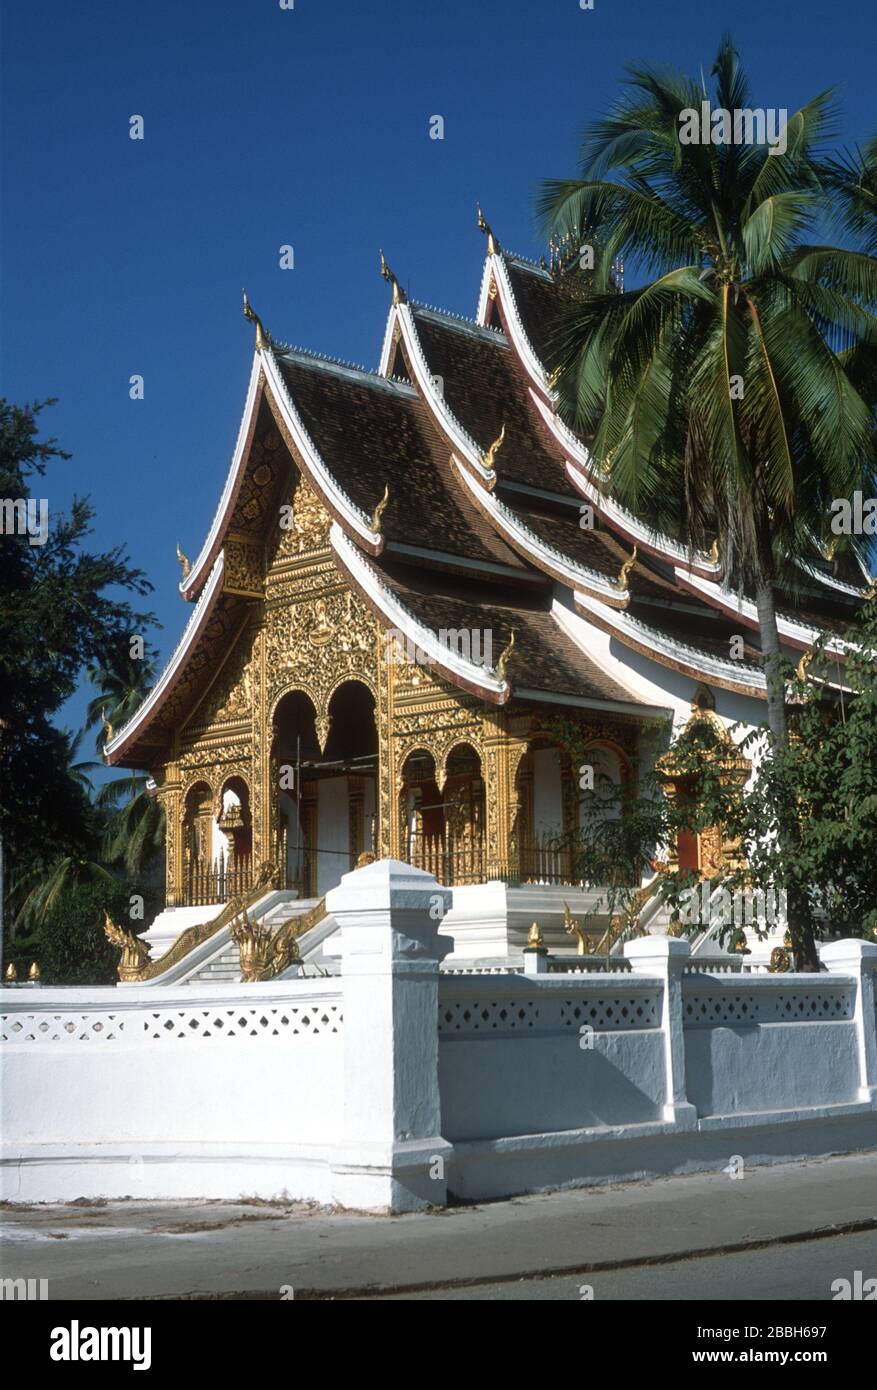 La facciata in oro e i tetti curvi sovrapposti del Tempio reale o Haw Pha Bang. Tempio buddista o wat a Luang Prabang, Laos, S.E. Asia. Costruito per ospitare il Buddha di Phra Bang, da cui Luang Prabang prende il nome. Nagas (serpenti del fiume) adornano il tetto e proteggono i gradini. La città di Luang Prabang è patrimonio dell'umanità dell'UNESCO. Foto Stock